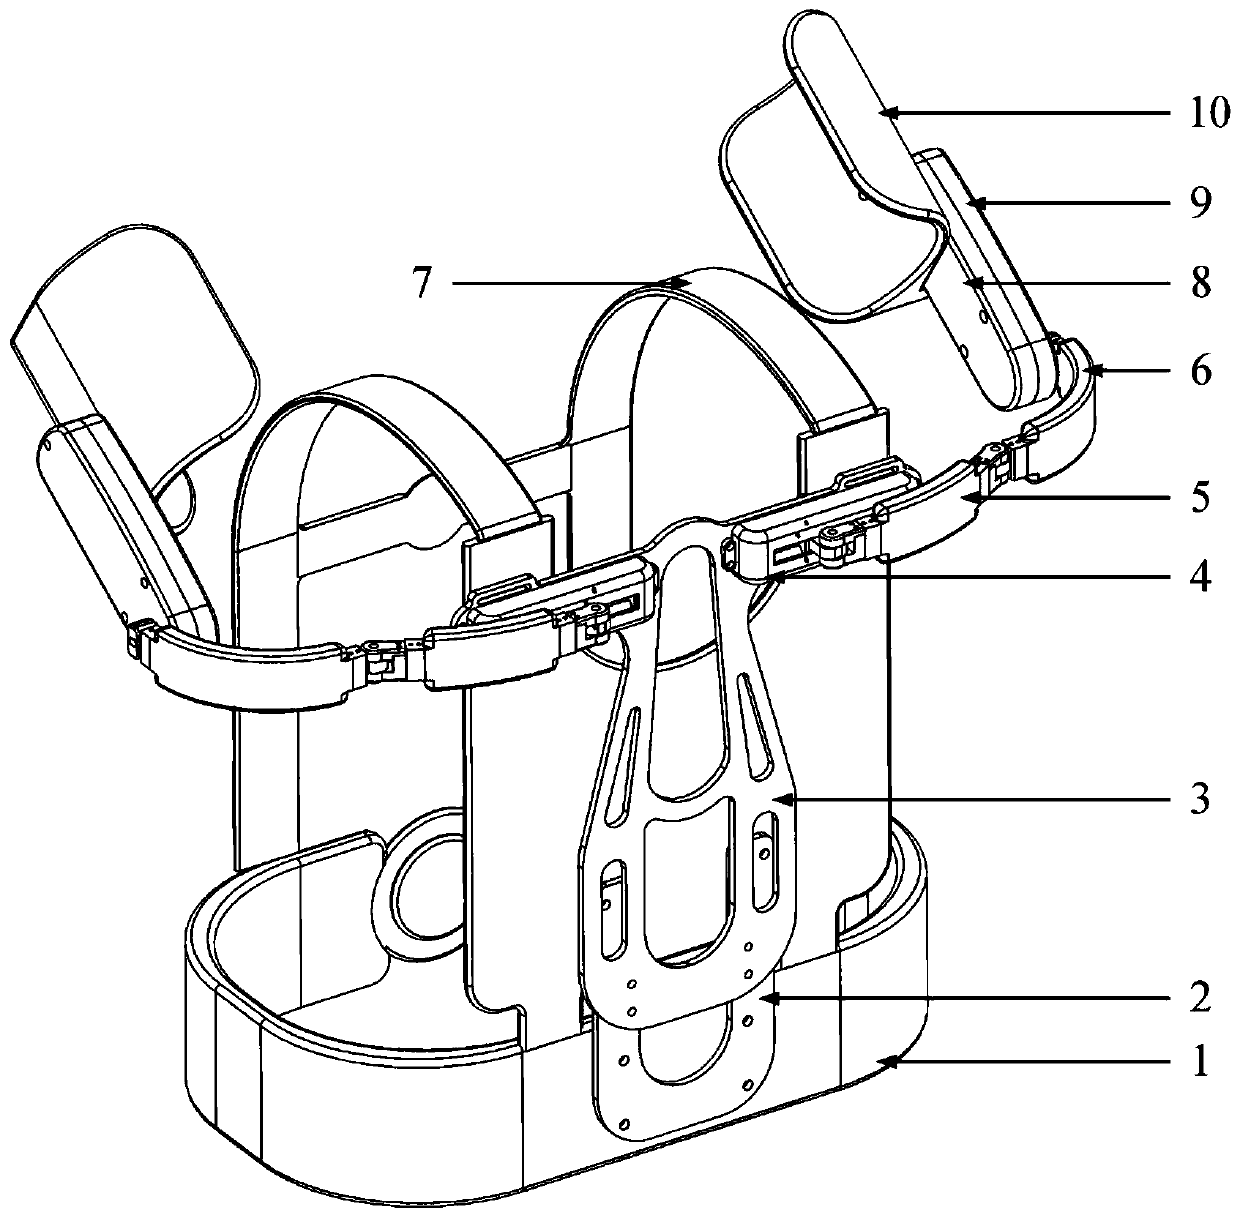 A kind of shoulder-assisted lifting exoskeleton